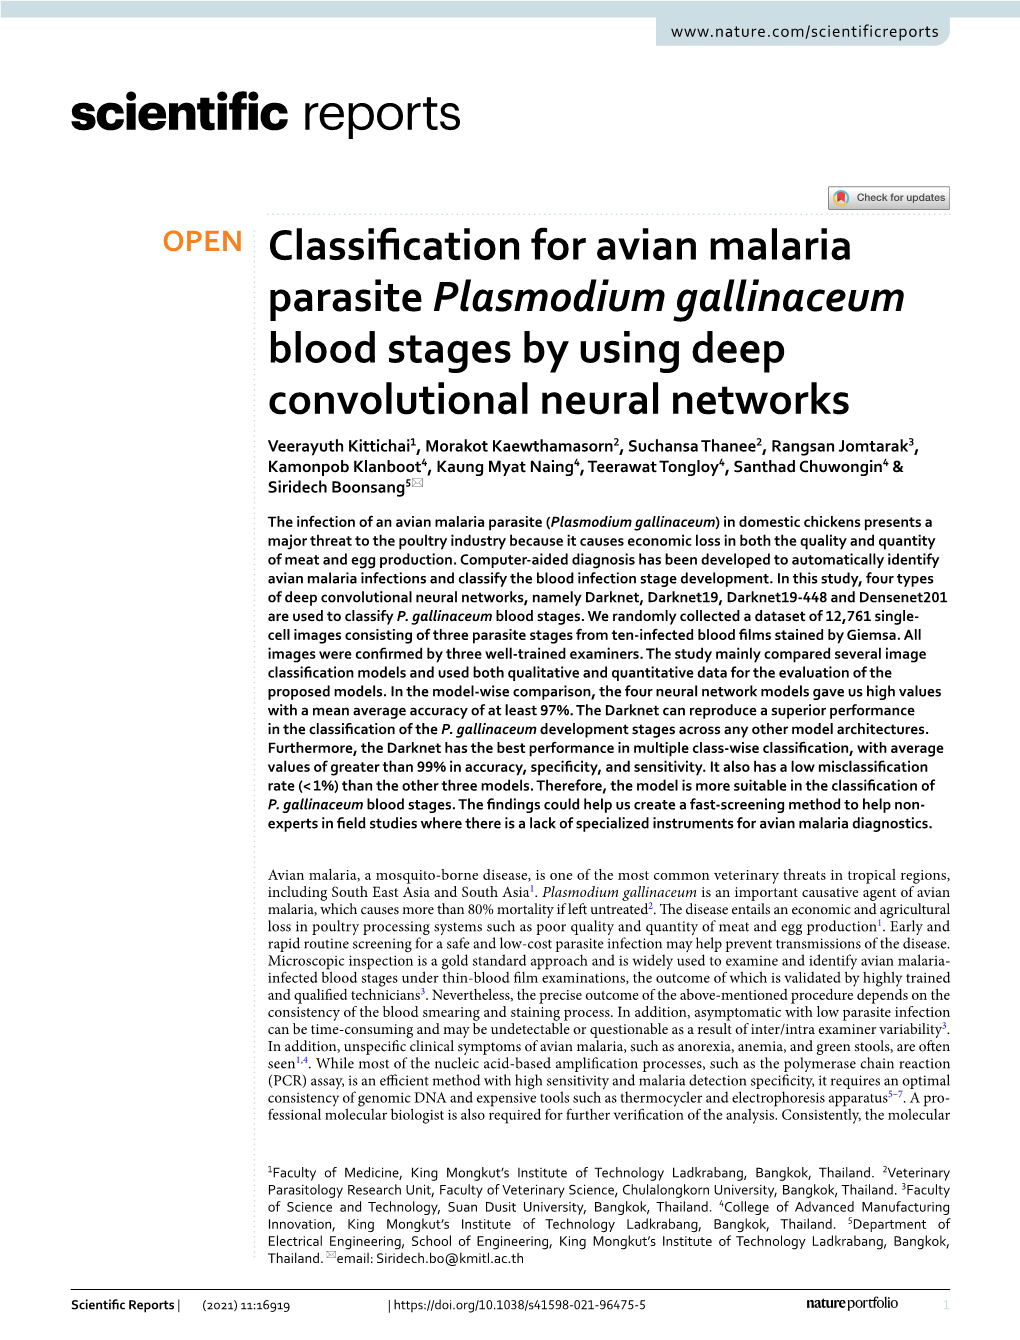 Classification for Avian Malaria Parasite Plasmodium Gallinaceum